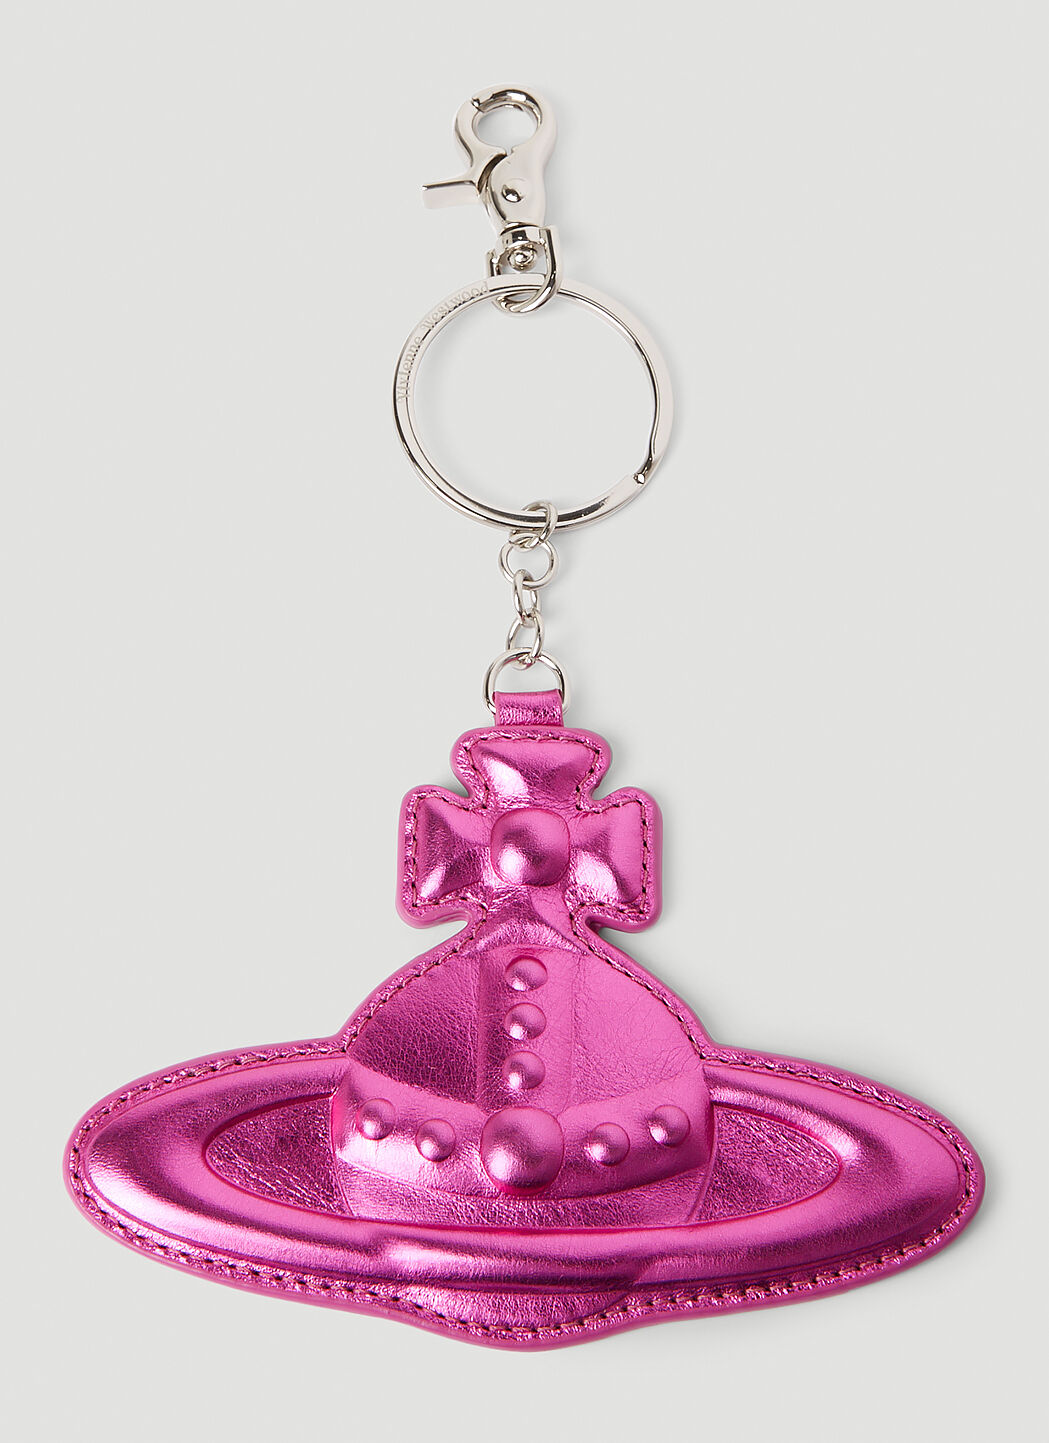 Gucci 金属色星环钥匙圈 粉色 guc0255179